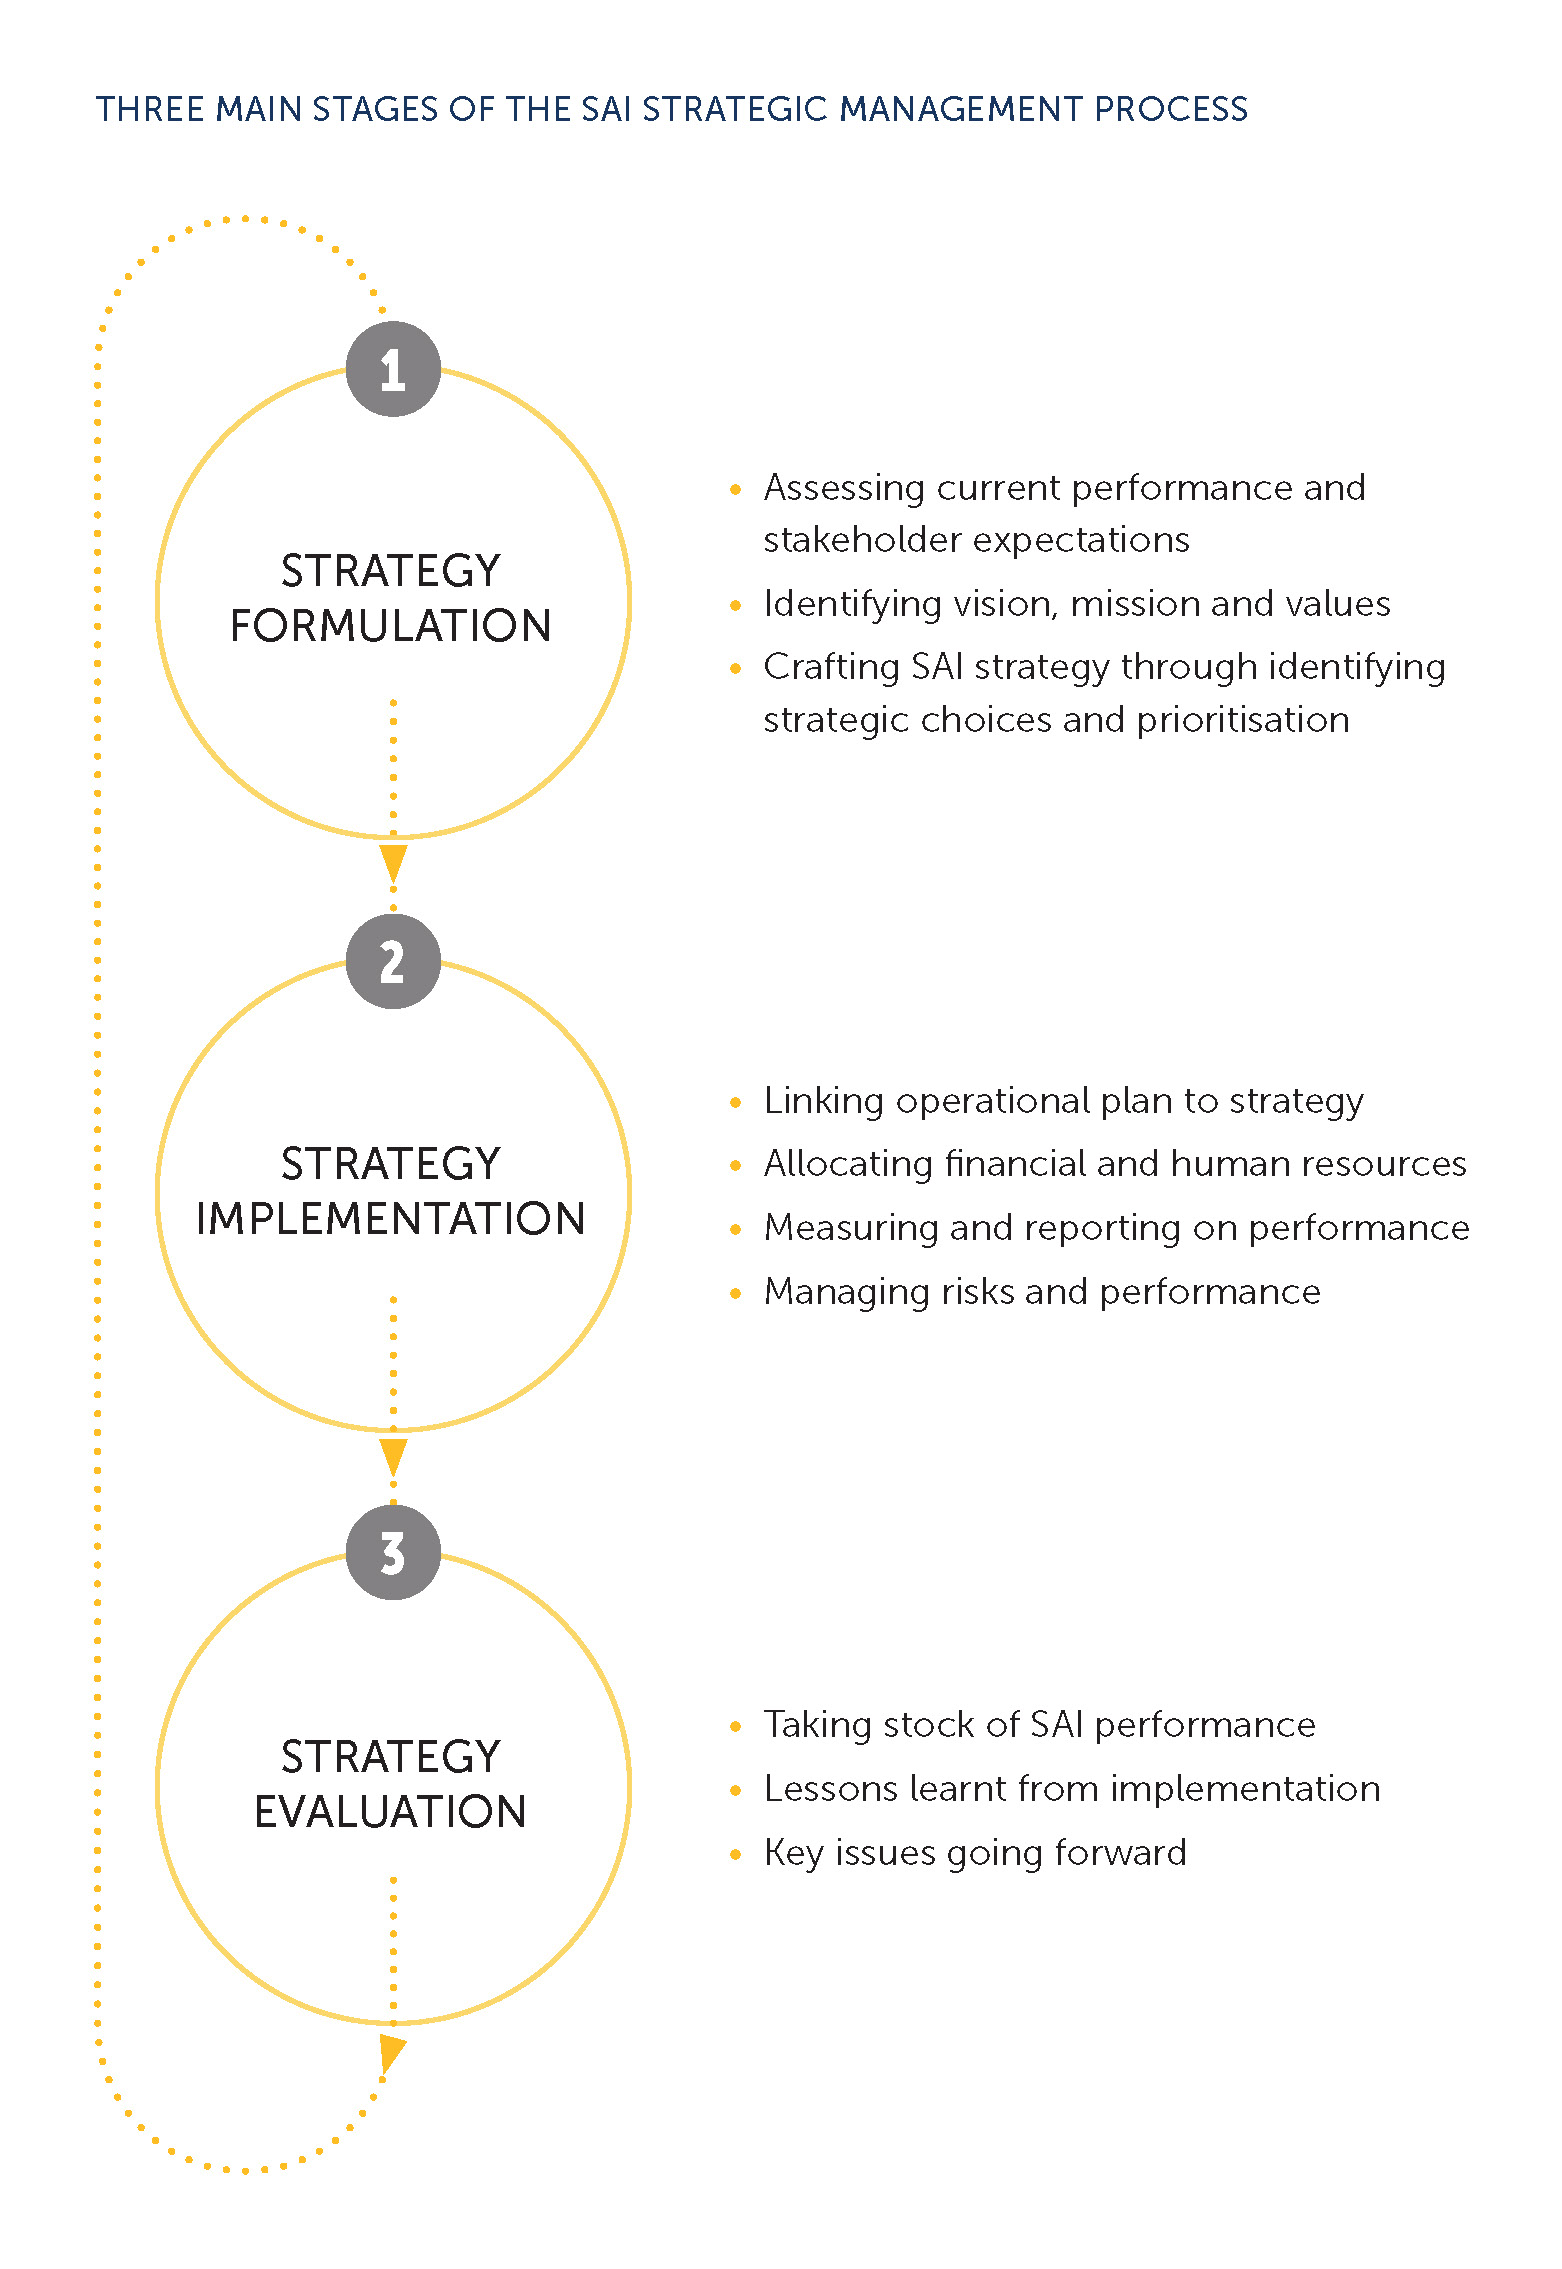 الشكل: ثلاث مراحل رئيسية لعملية الإدارة الاستراتيجية للجهاز